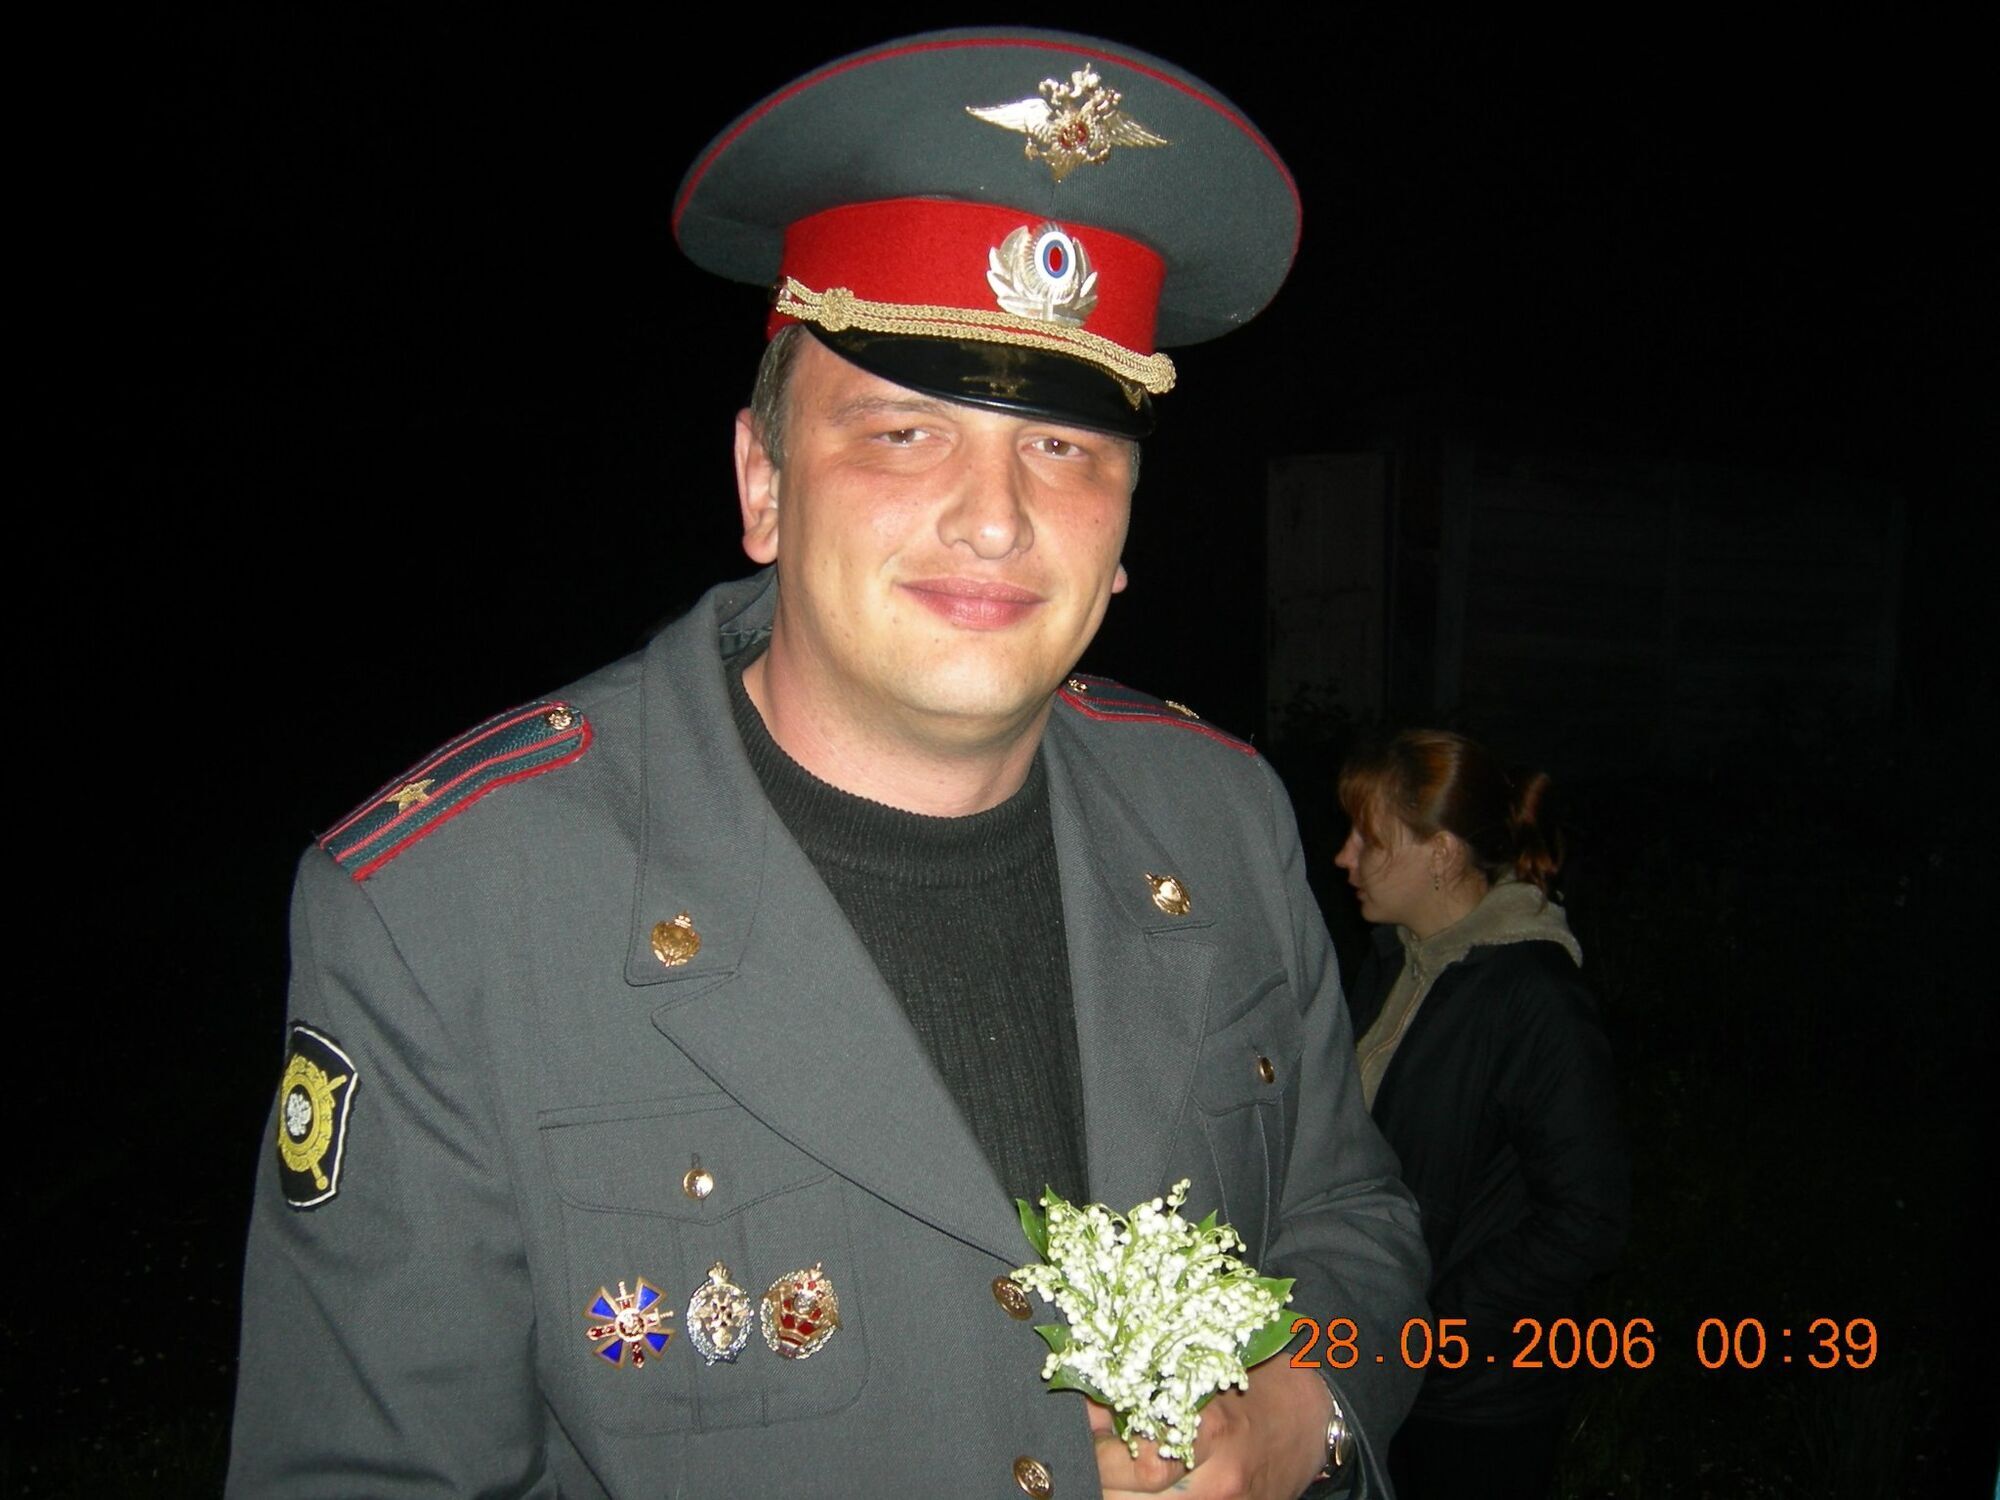 Антона Лушина, який воював проти України, ліквідовано